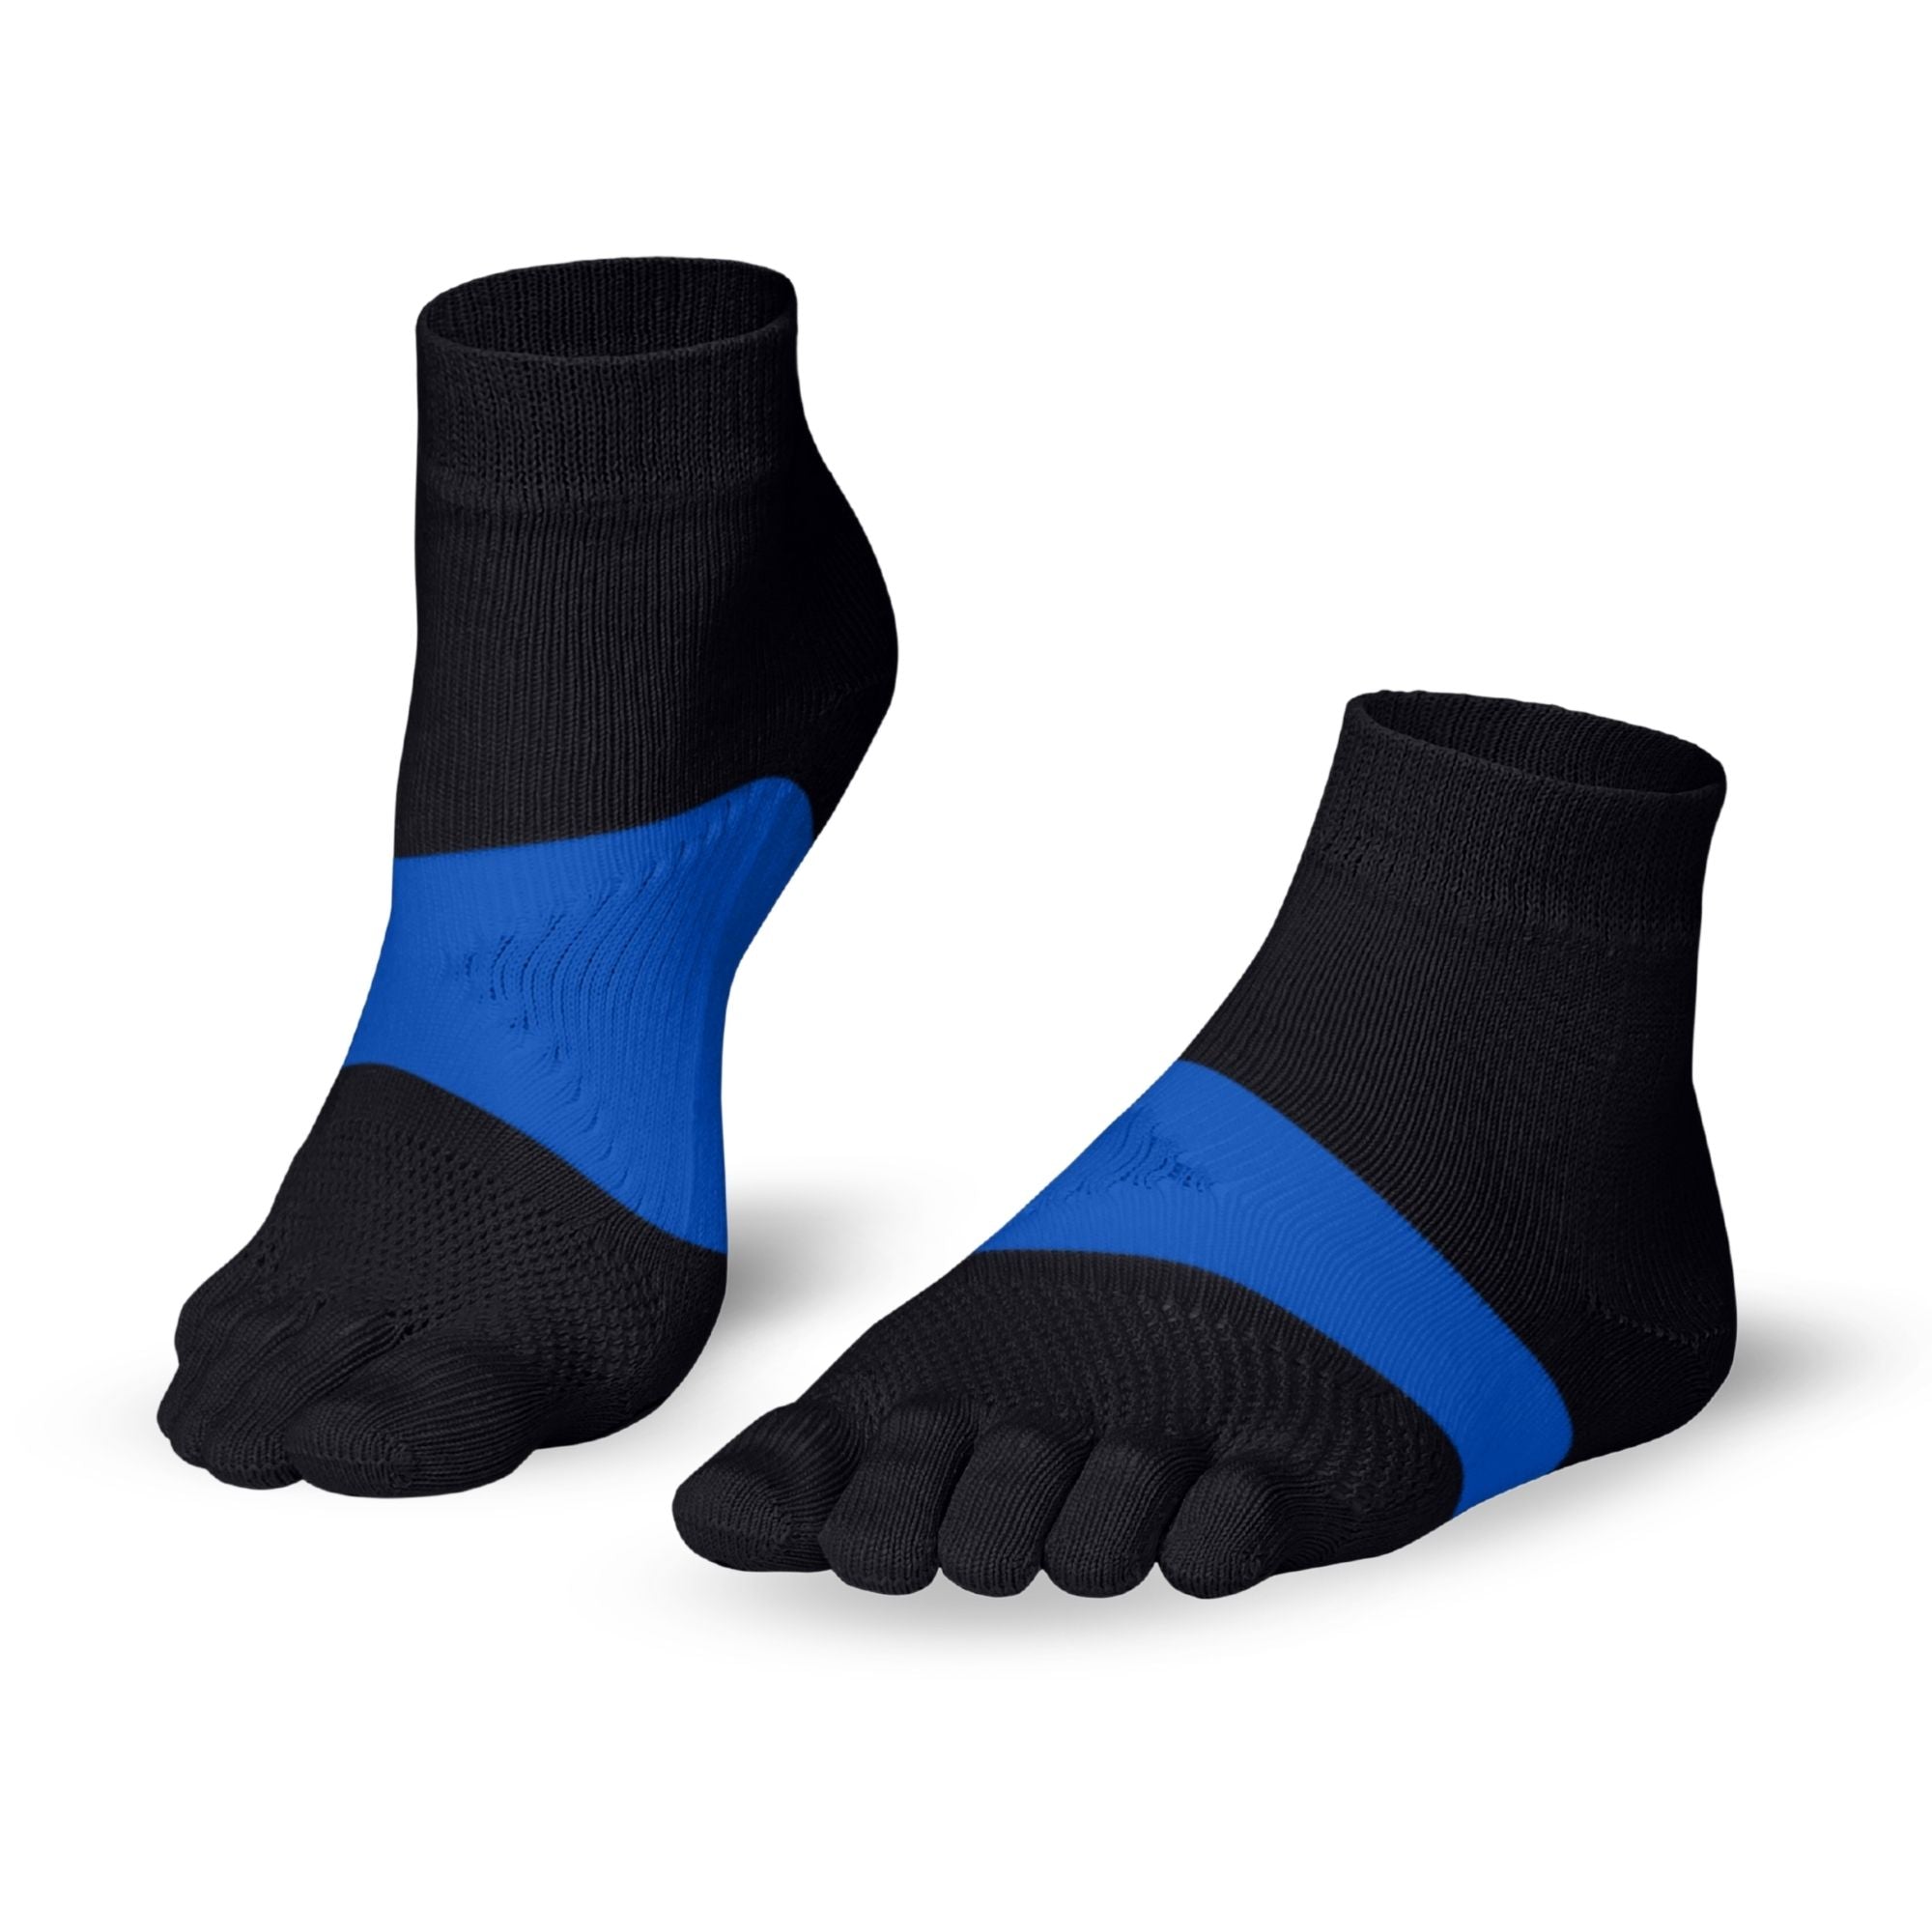 Knitido Marathon chaussettes à orteils pour le sport et les courses de longue distance en navy / bleu